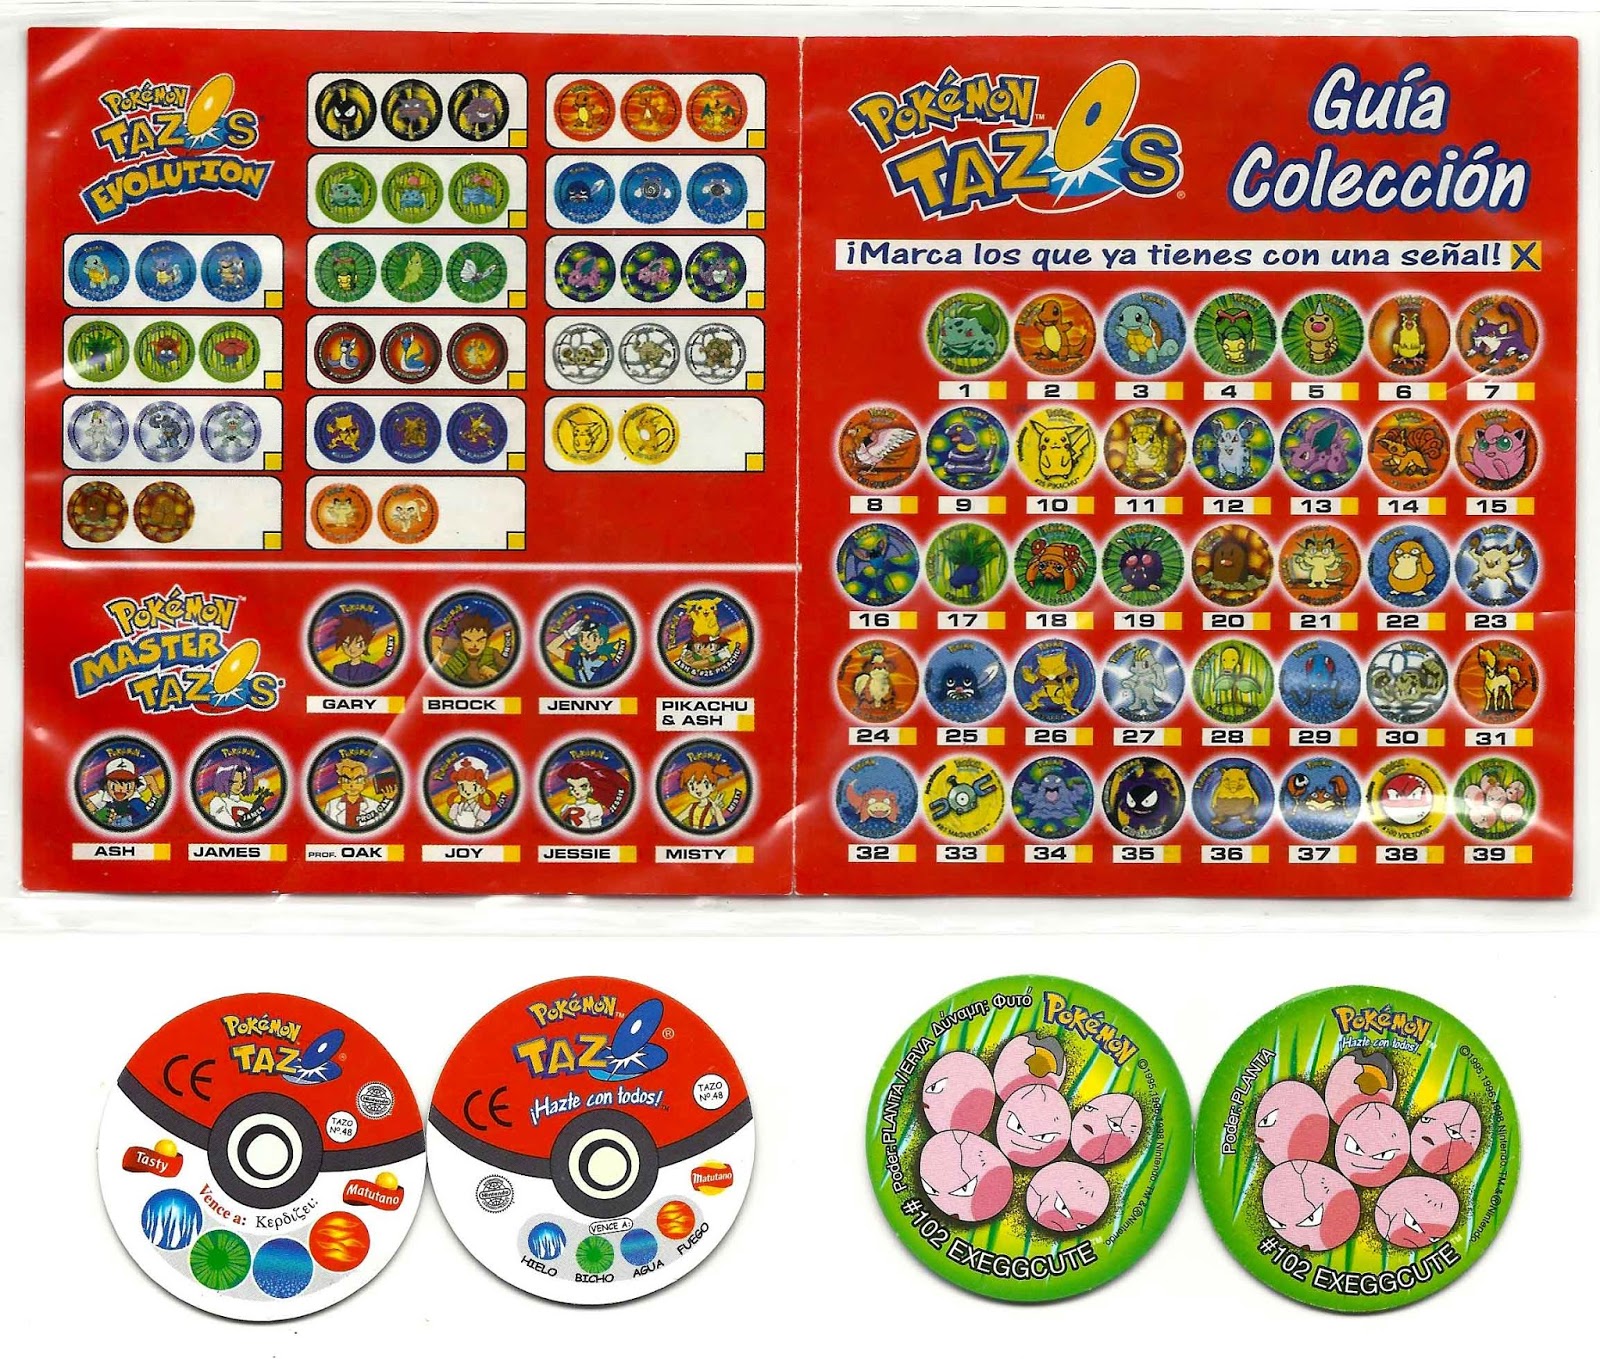 El Sello Verde: Doscientos veinte tazos Pokémon y Ash